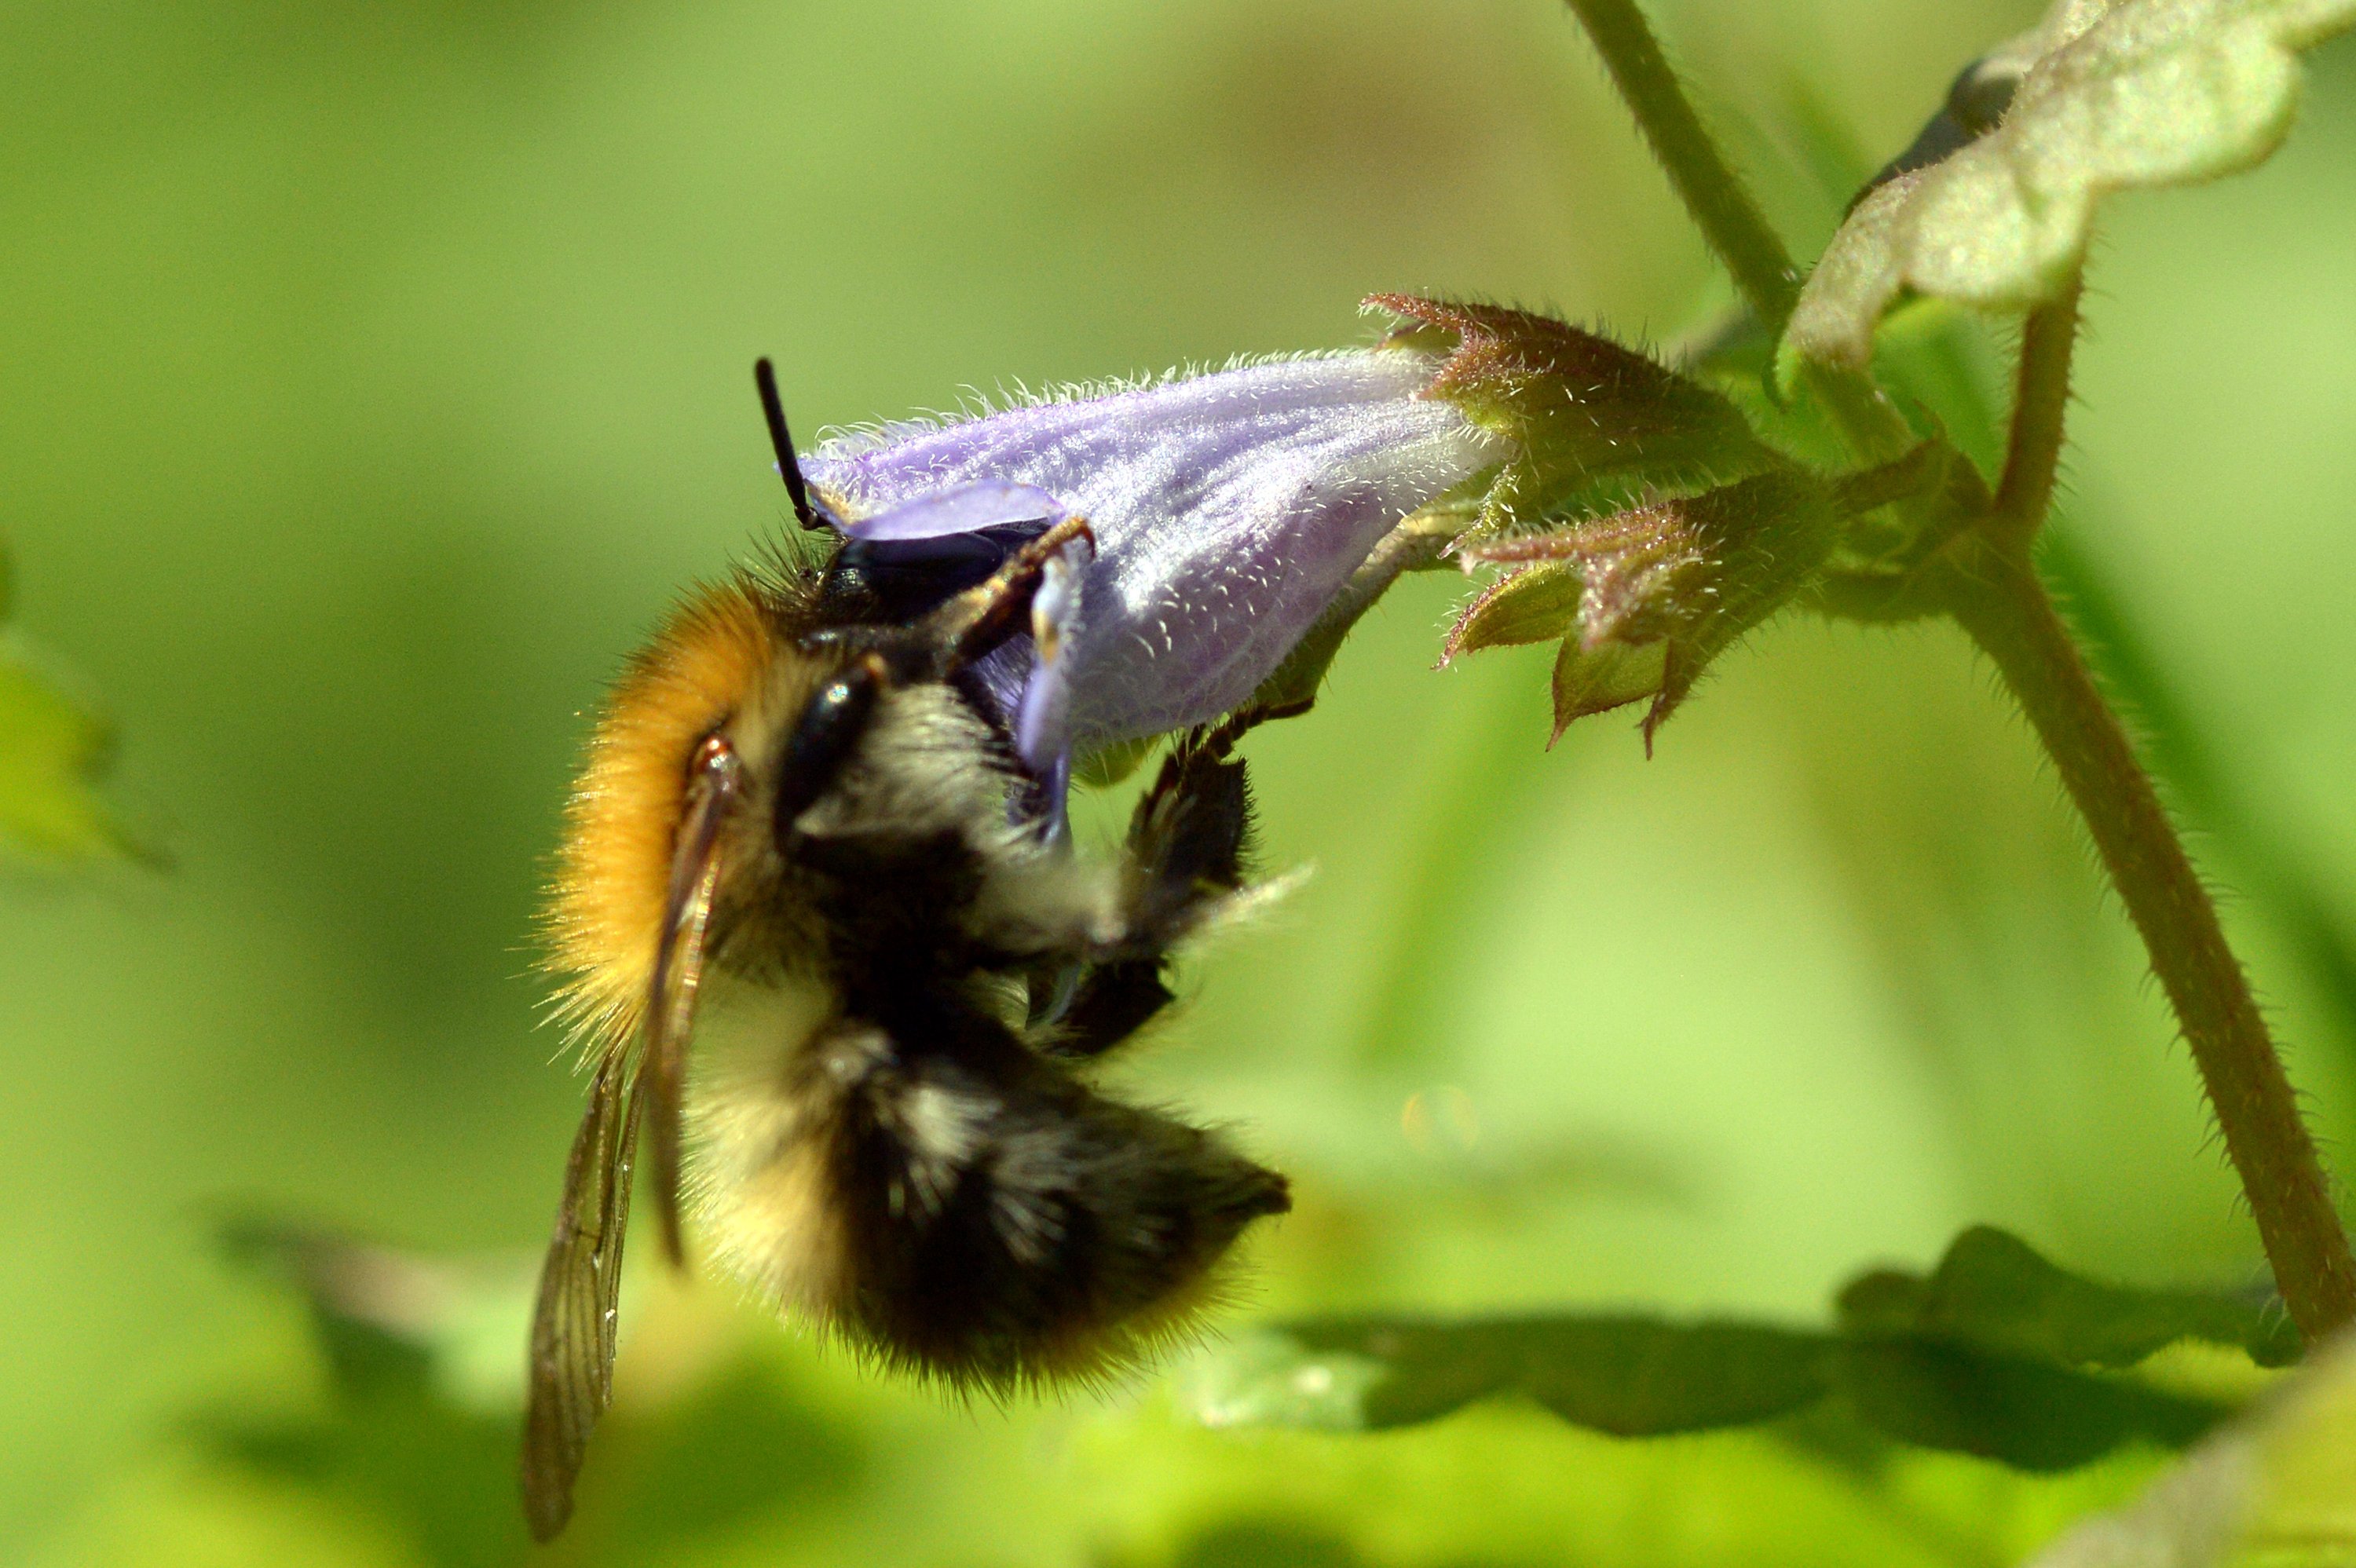 Kunststoffpartikel lagern sich angeblich auch in Blüten ab. Bienen nehmen sie auf und kontaminieren somit den Honig.